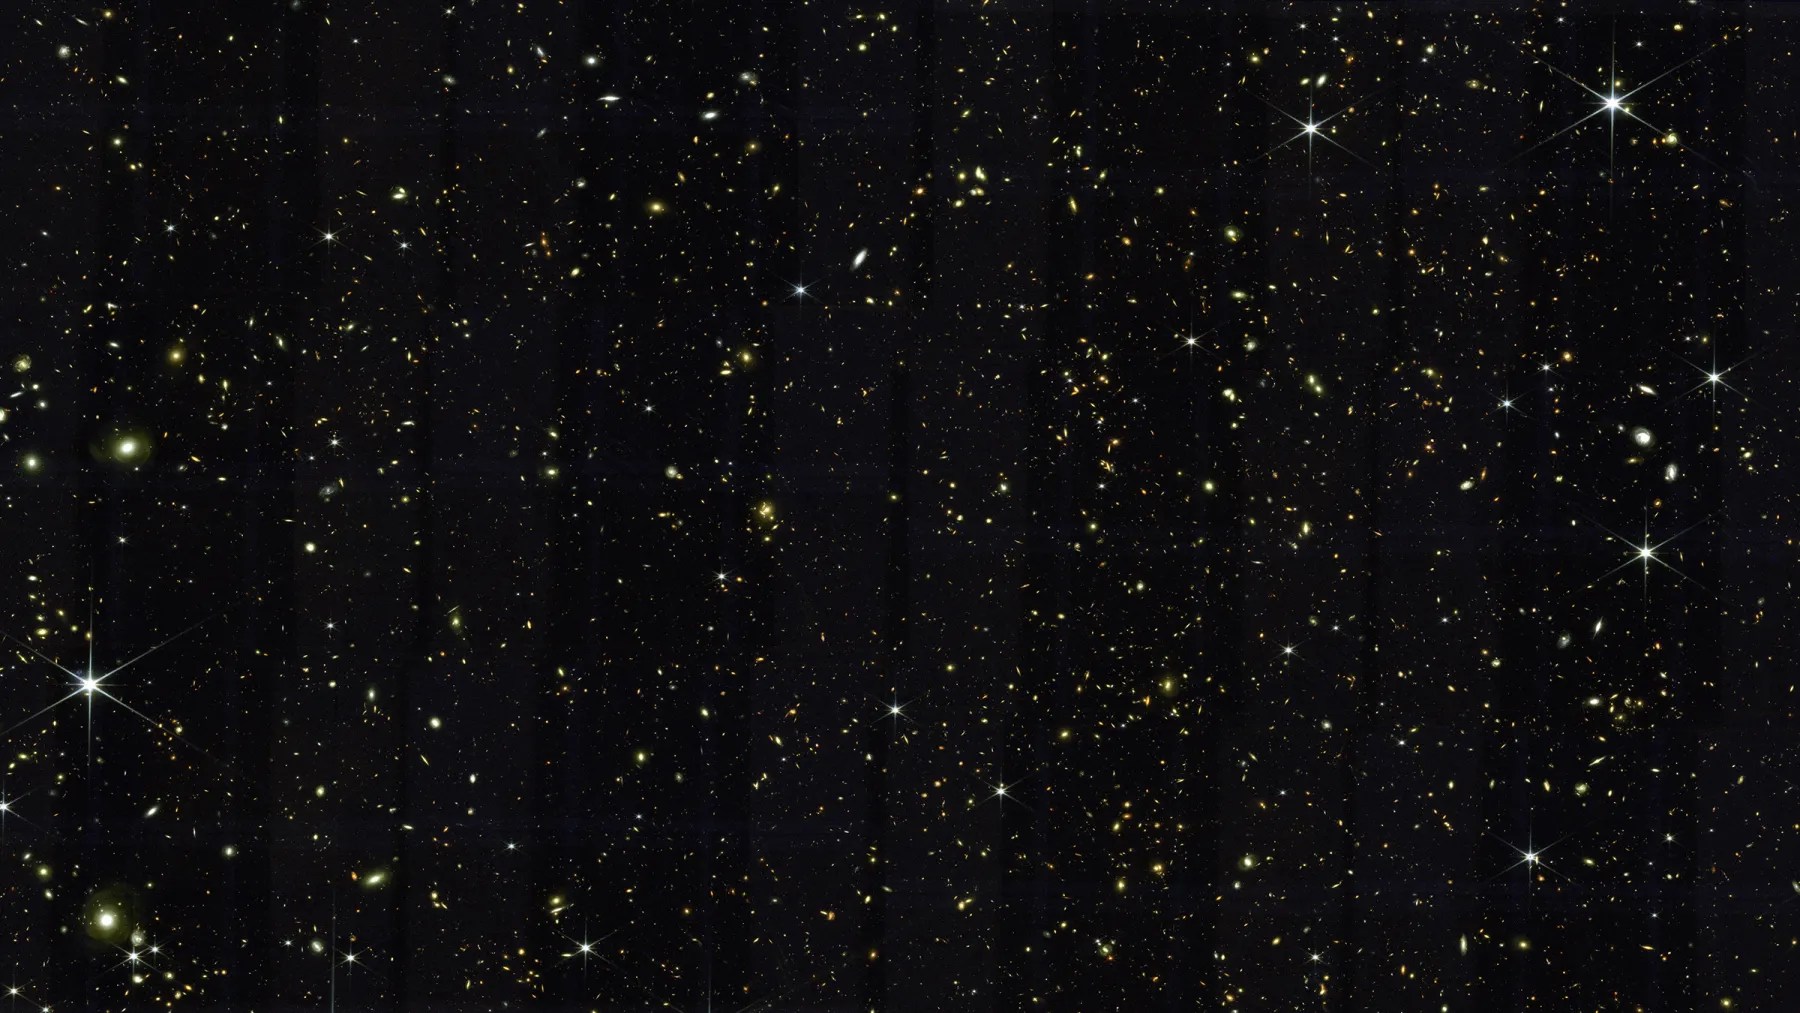     Il James Webb Telescope vede più galassie in una singola immagine rispetto alla Deepest View di Hubble